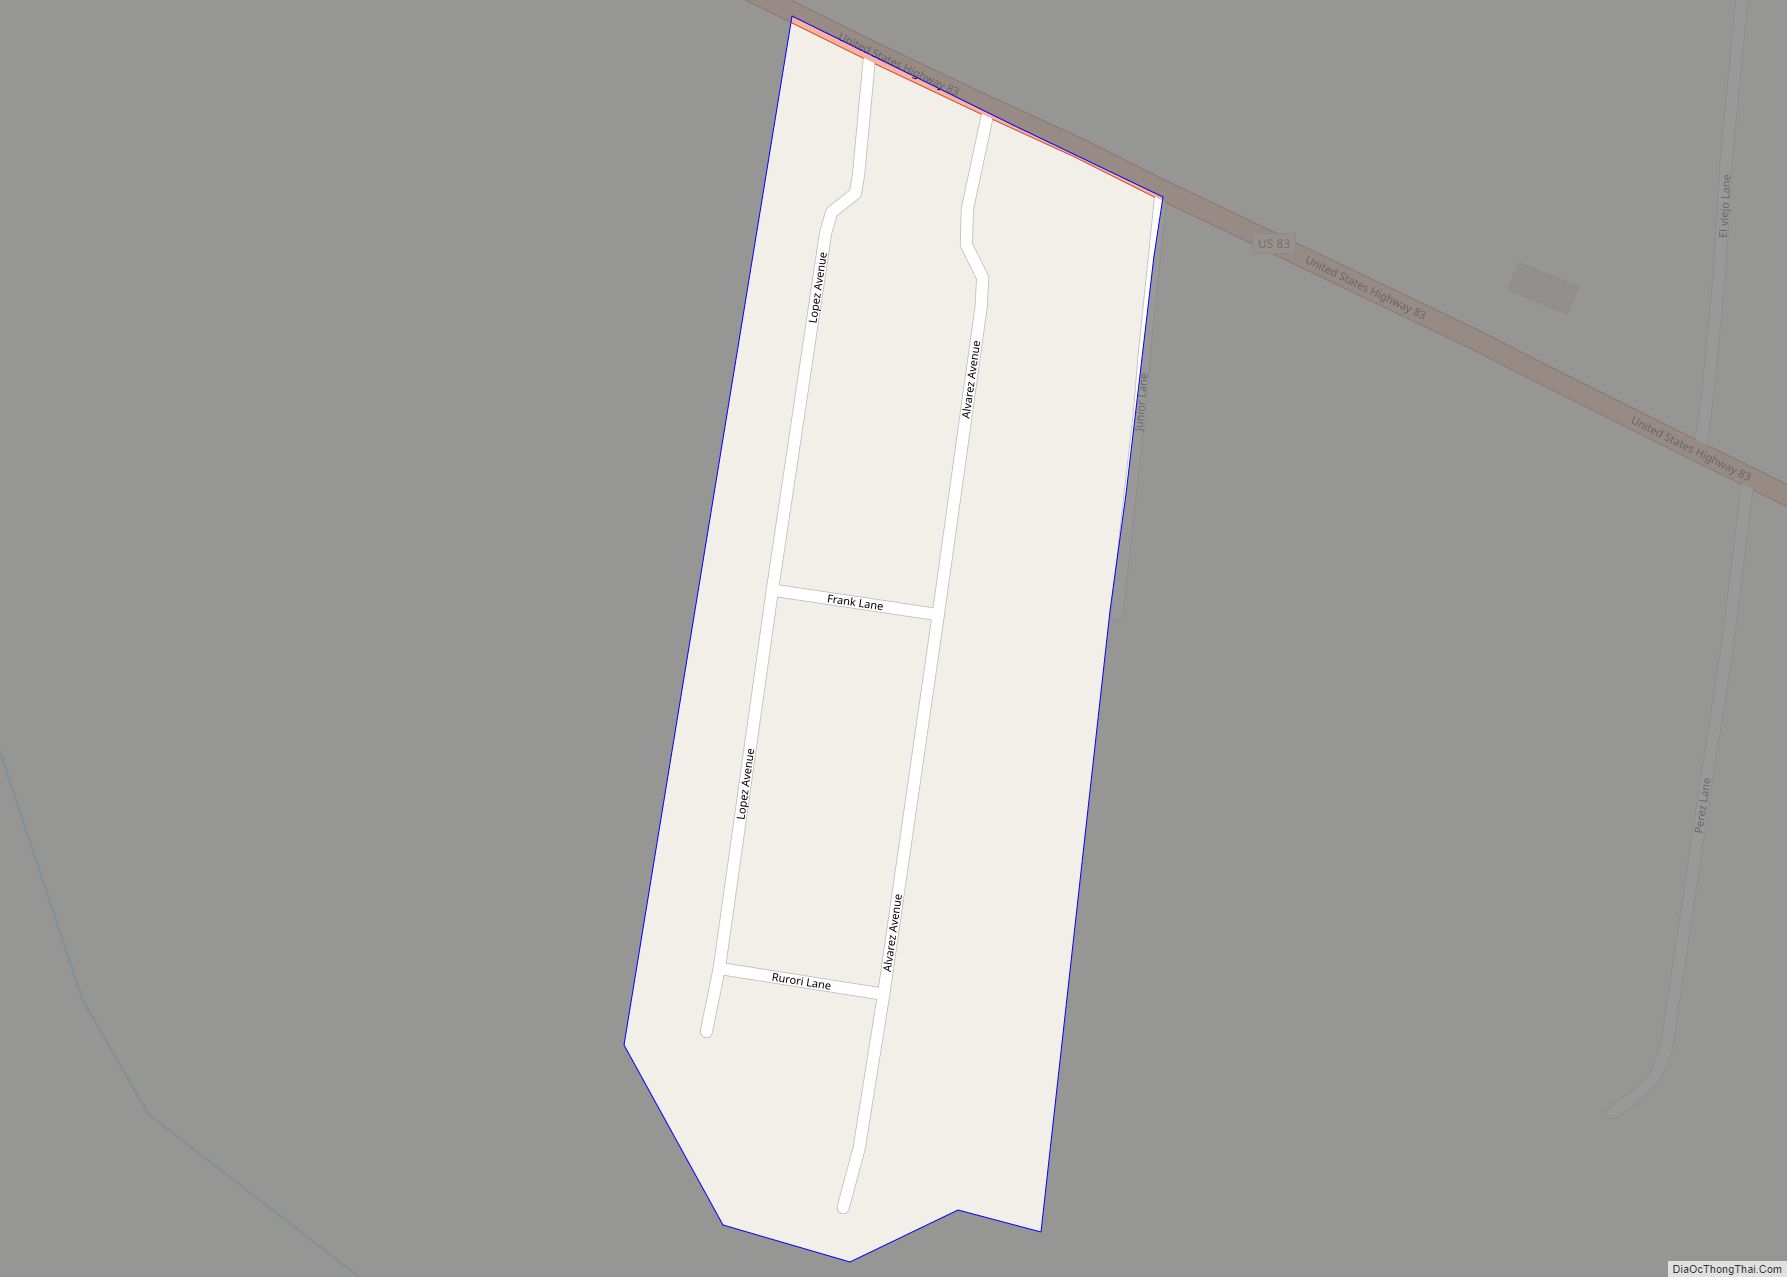 Map of El Quiote CDP